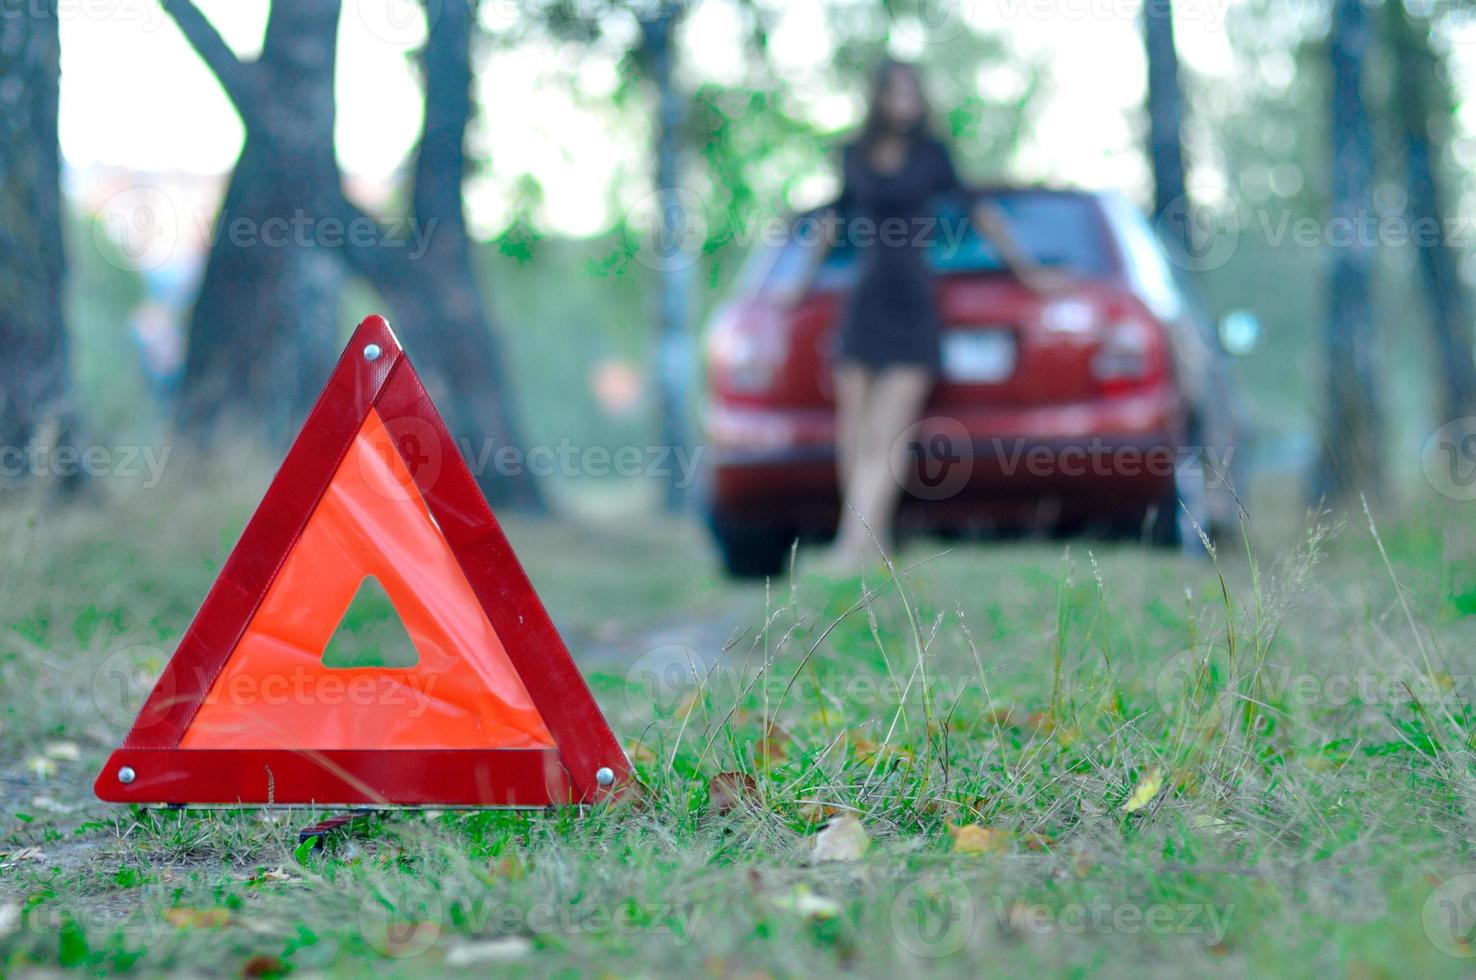 nödvägsskylt med en ung flicka och en bil i bakgrunden, sergiev posad, Ryssland foto